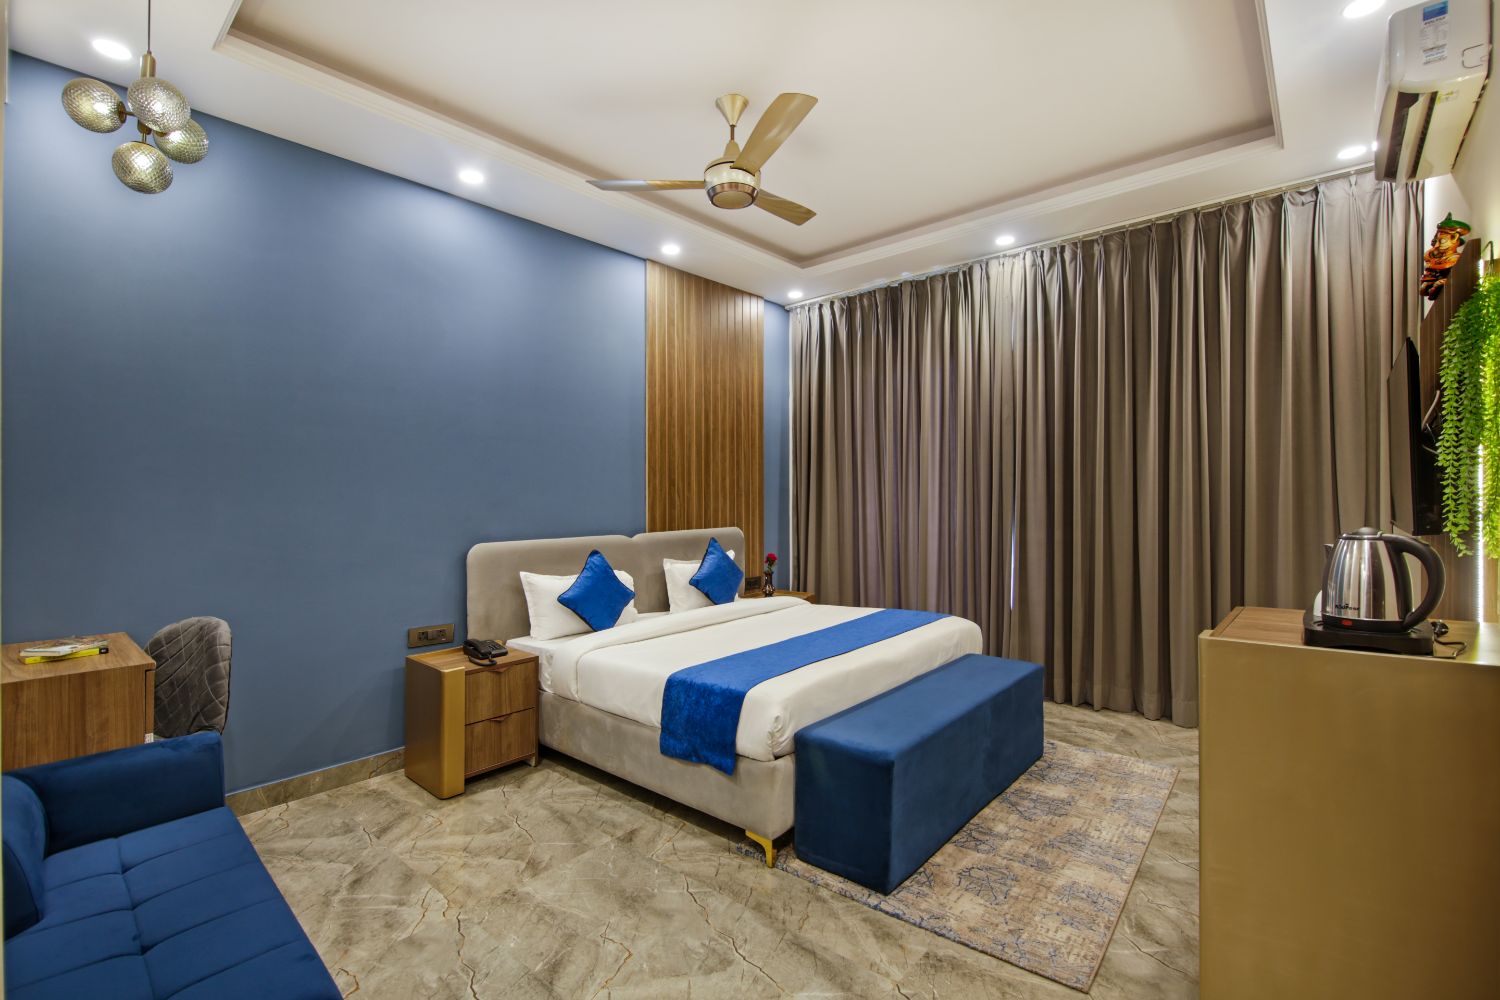 Rooms in Sector 143, Noida